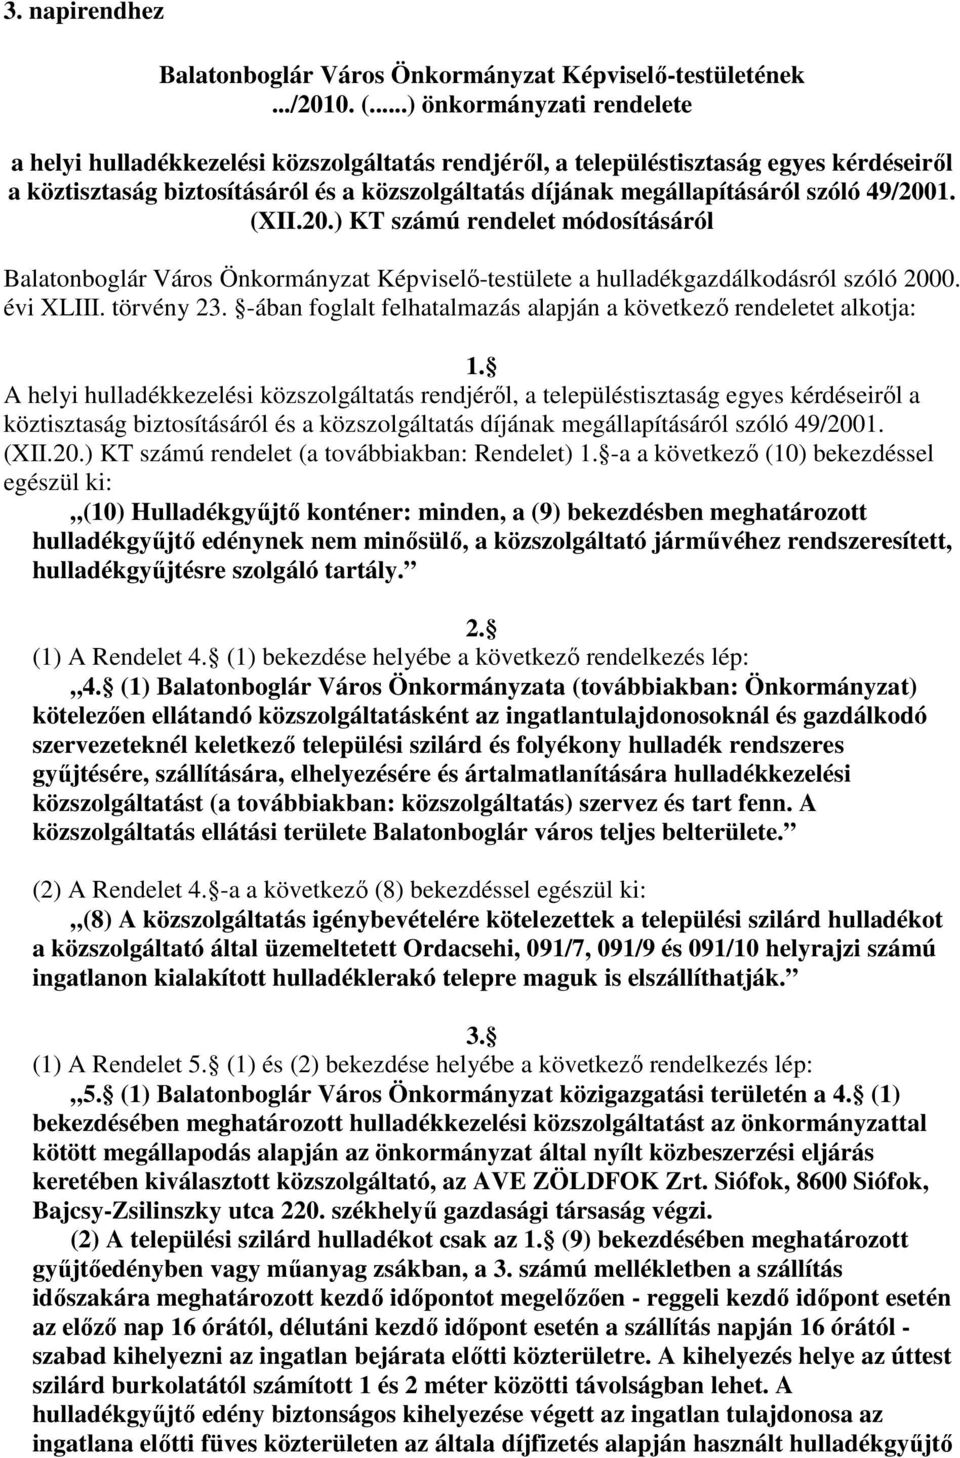 szóló 49/2001. (XII.20.) KT számú rendelet módosításáról Balatonboglár Város Önkormányzat Képviselı-testülete a hulladékgazdálkodásról szóló 2000. évi XLIII. törvény 23.